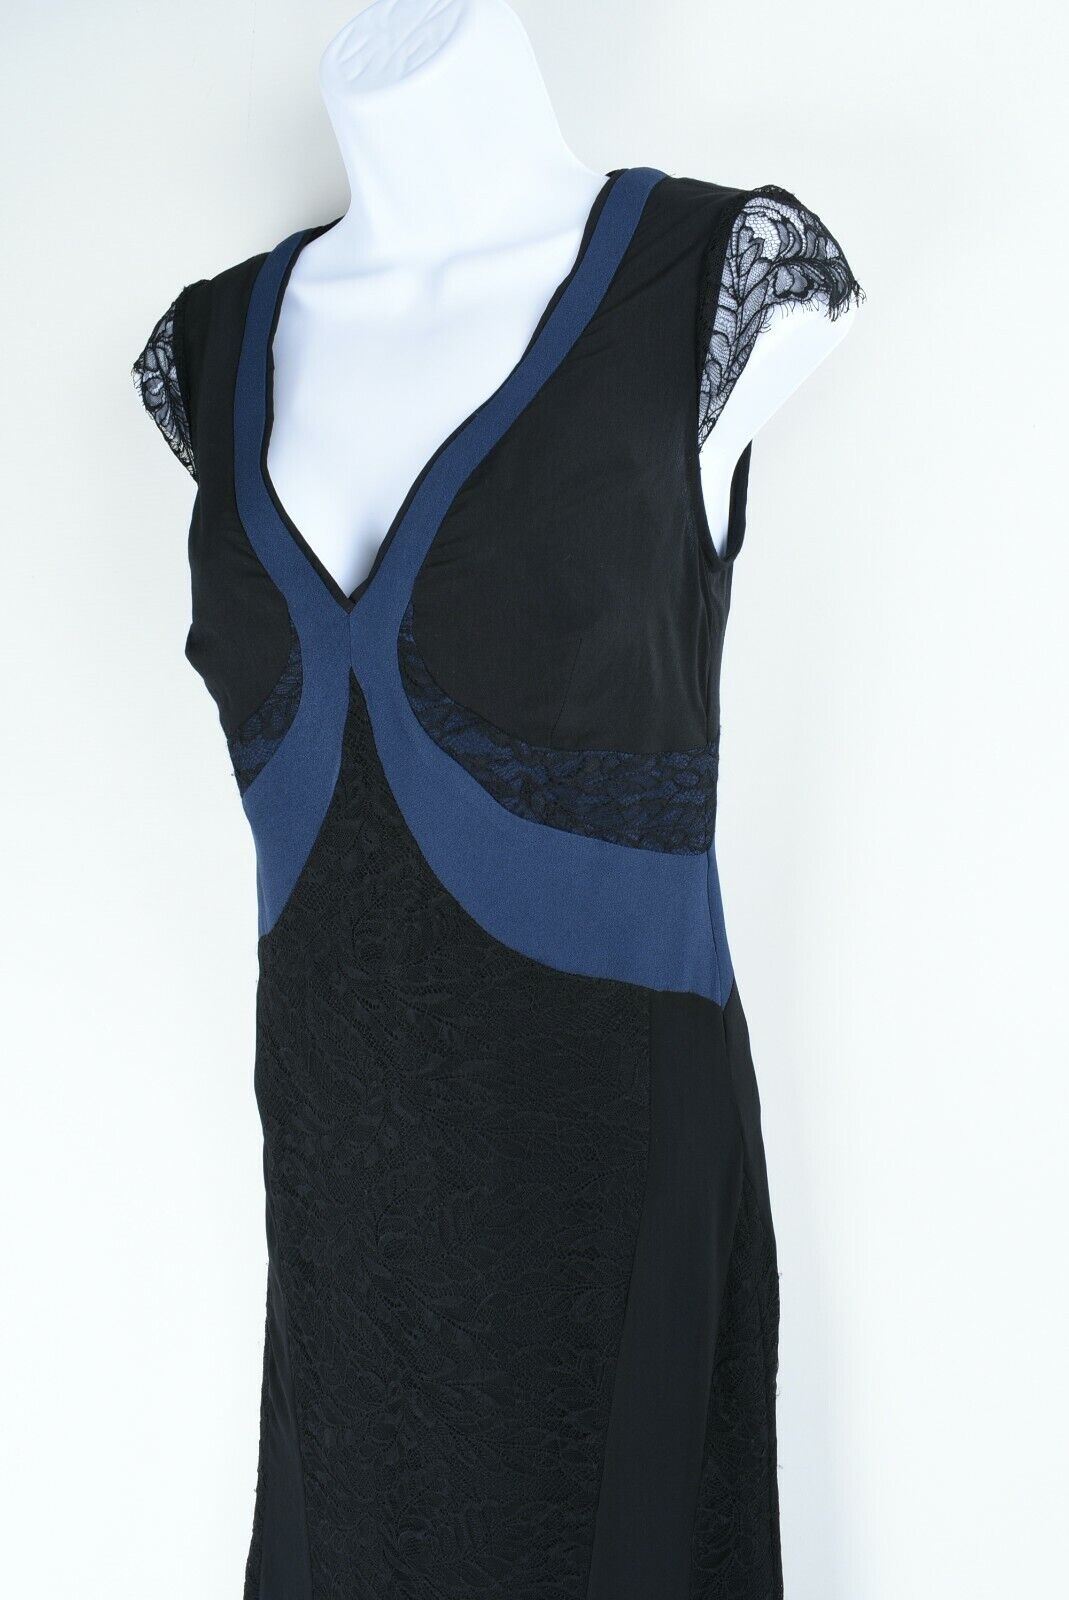 REISS Women's JULIANNE Lace Panel Maxi Dress, size UK 6